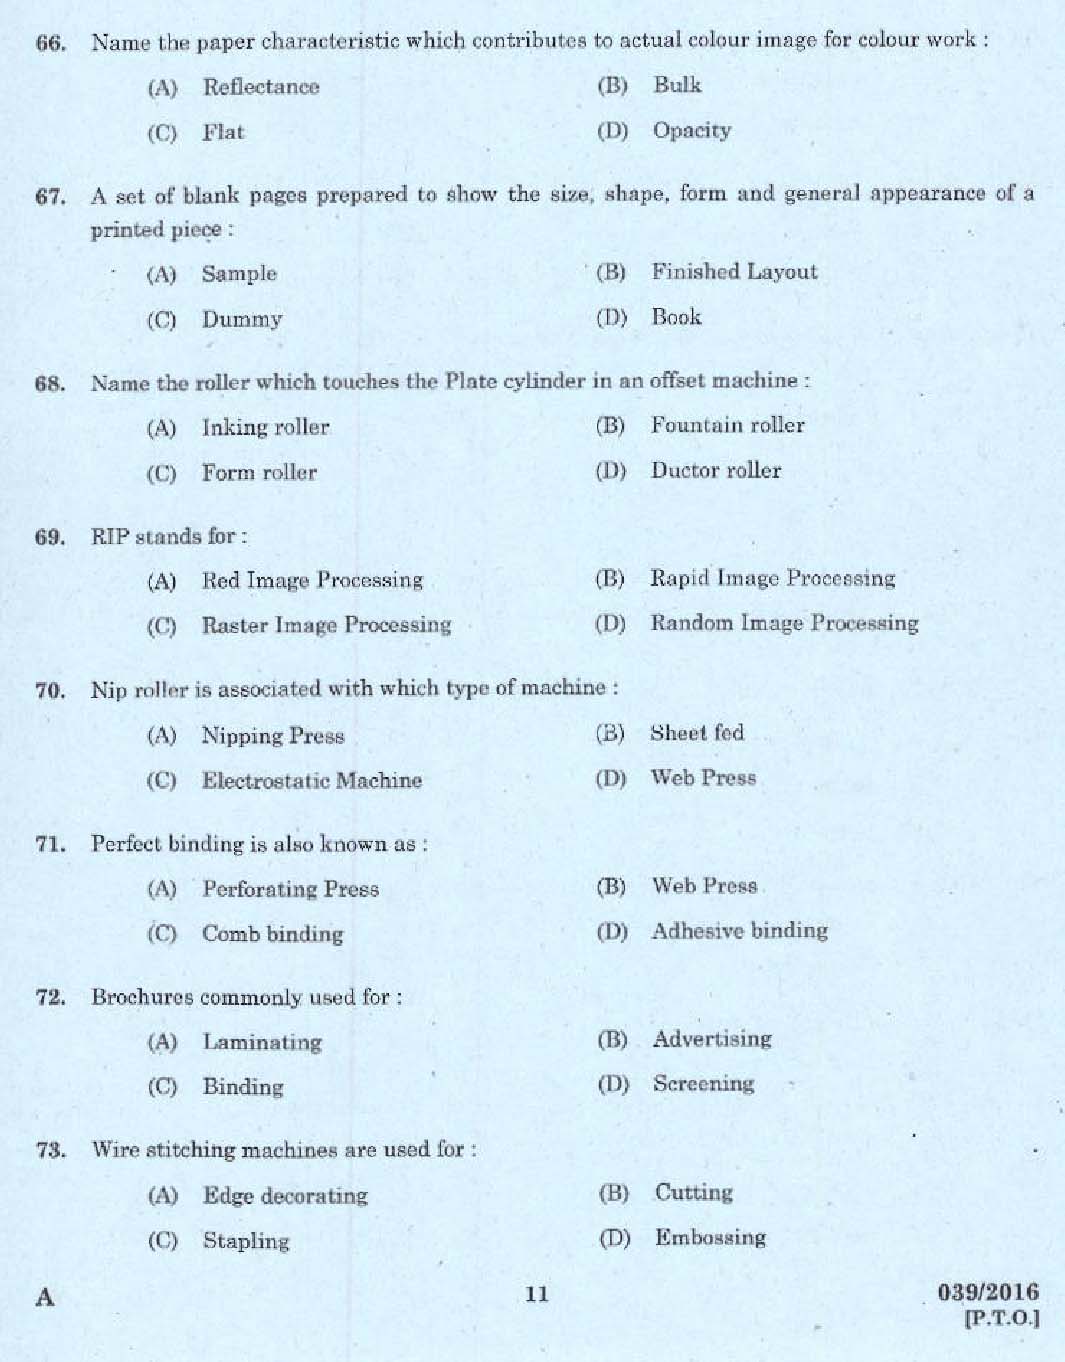 Kerala PSC Binder Grade II Exam Question Code 392016 9